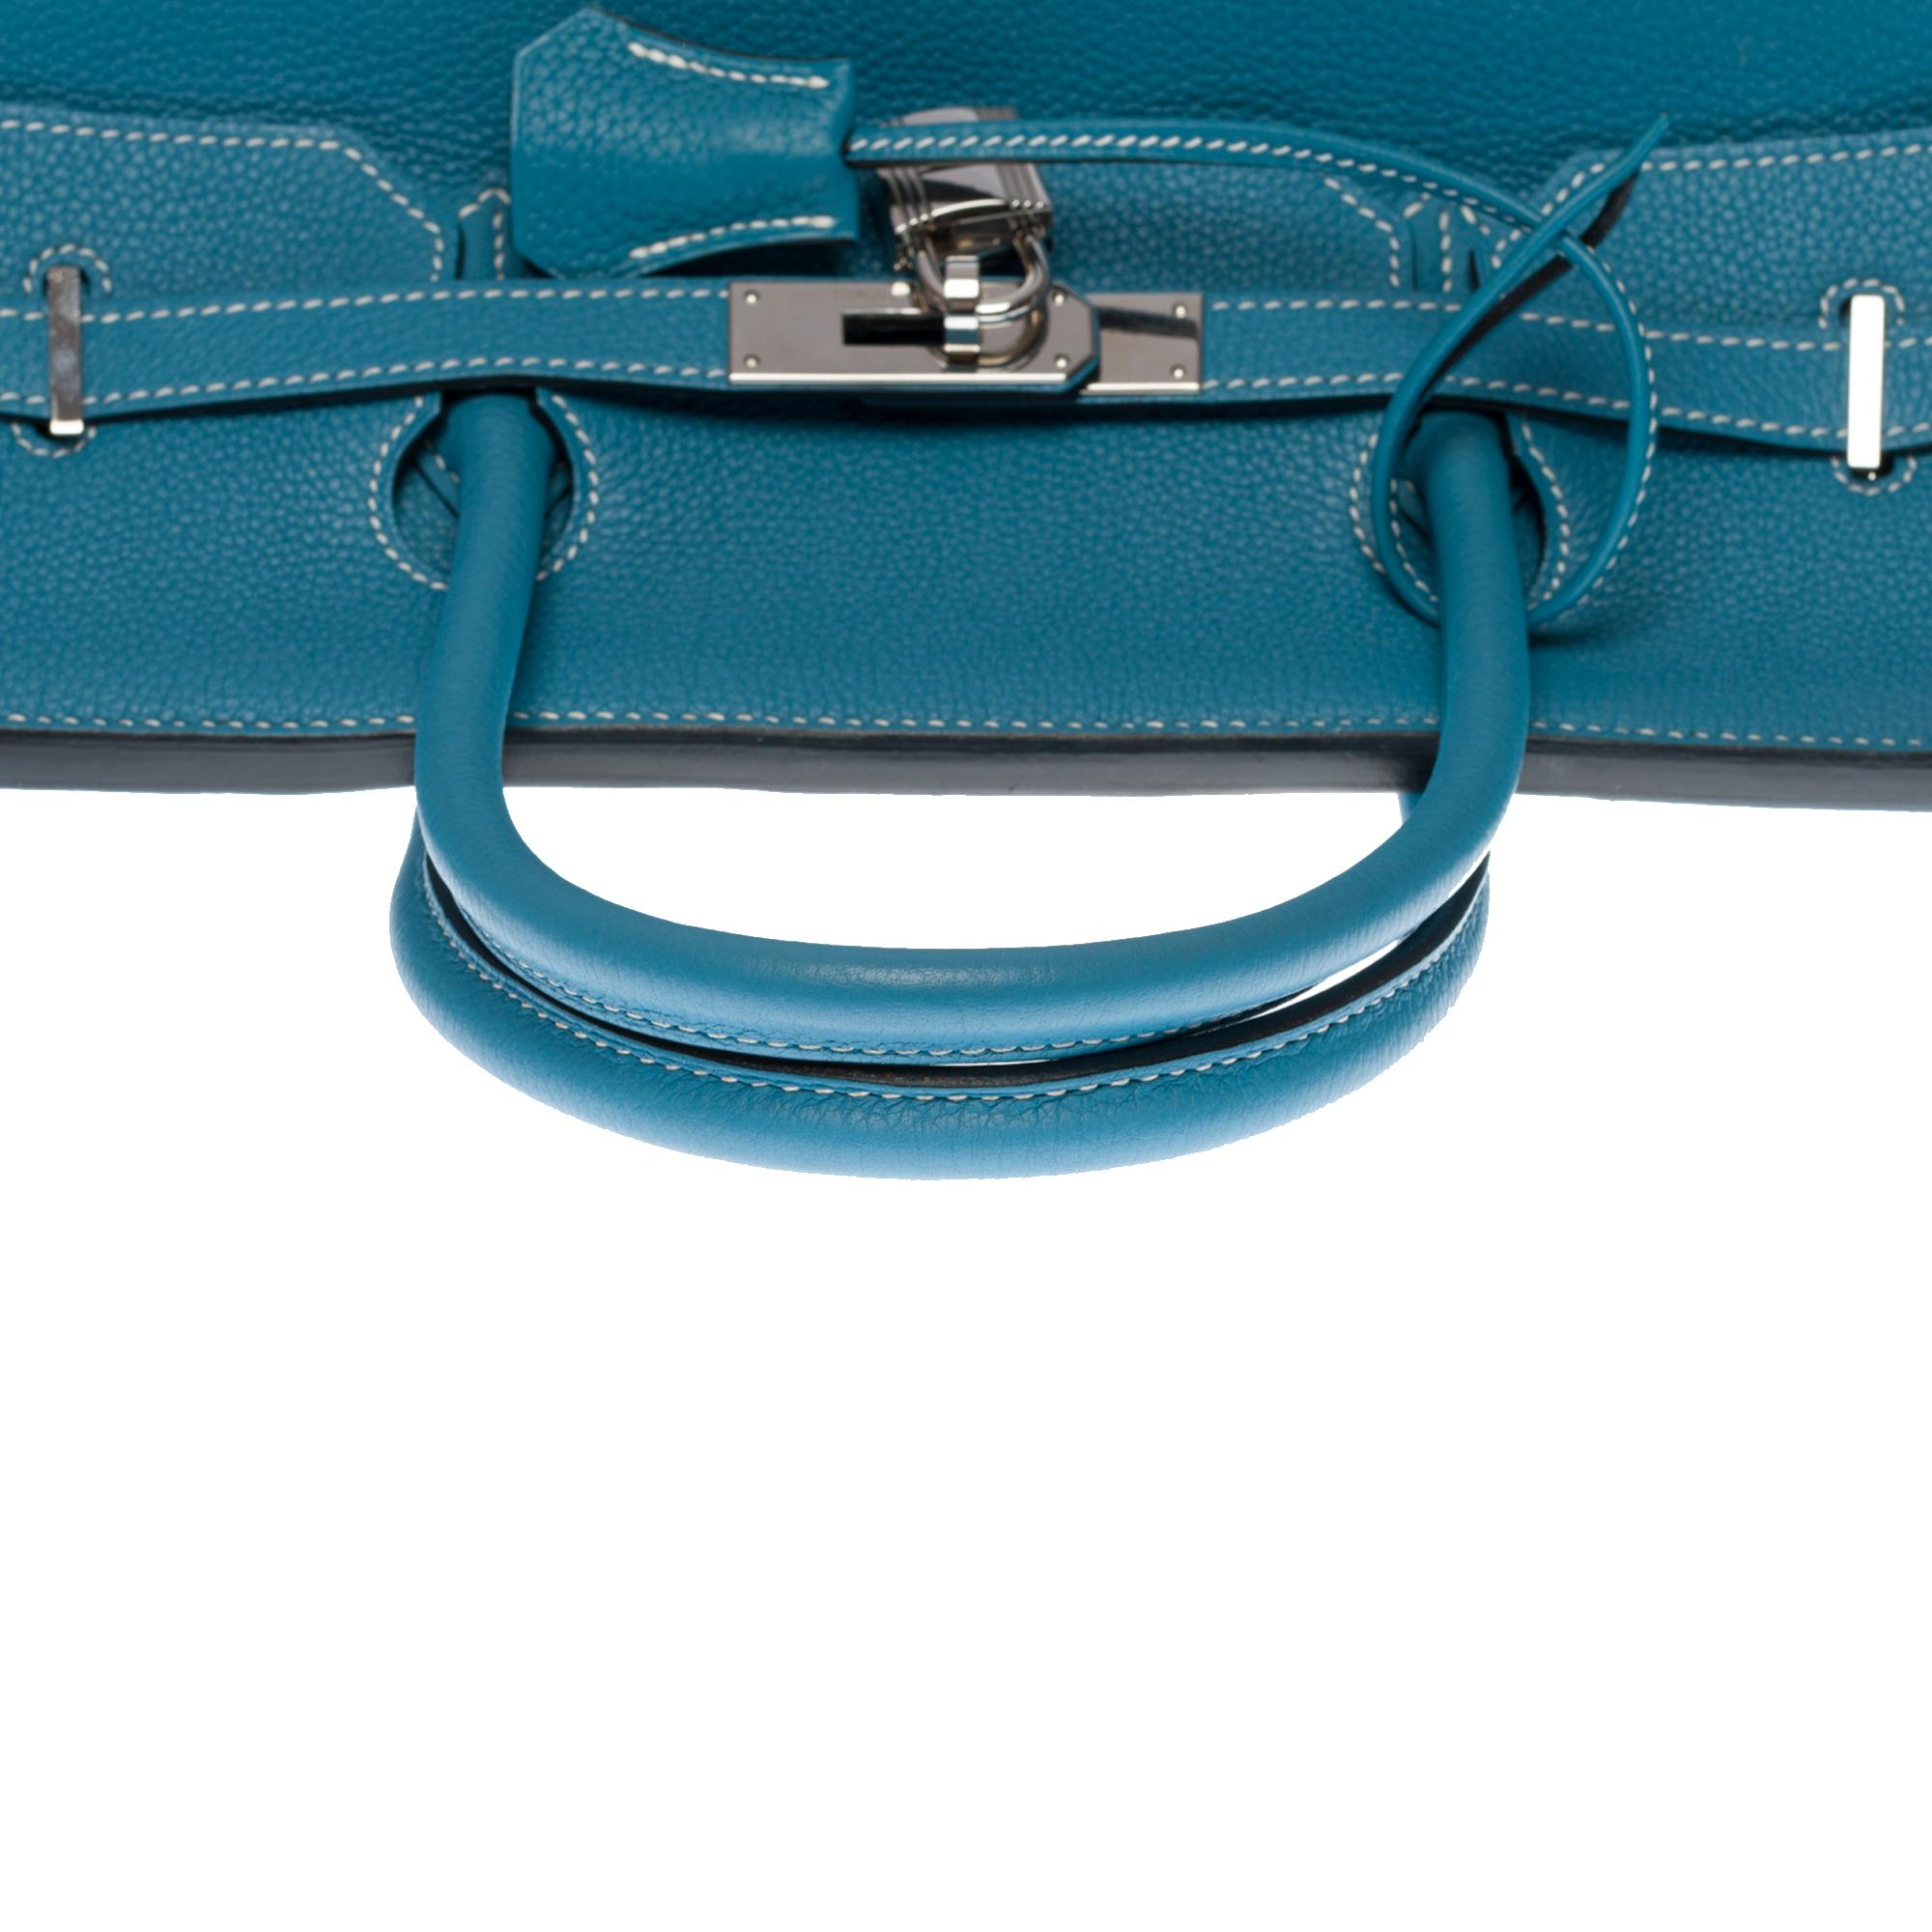 Stunning Hermes Birkin 40cm handbag in Blue Pétrole Togo leather, SHW 4